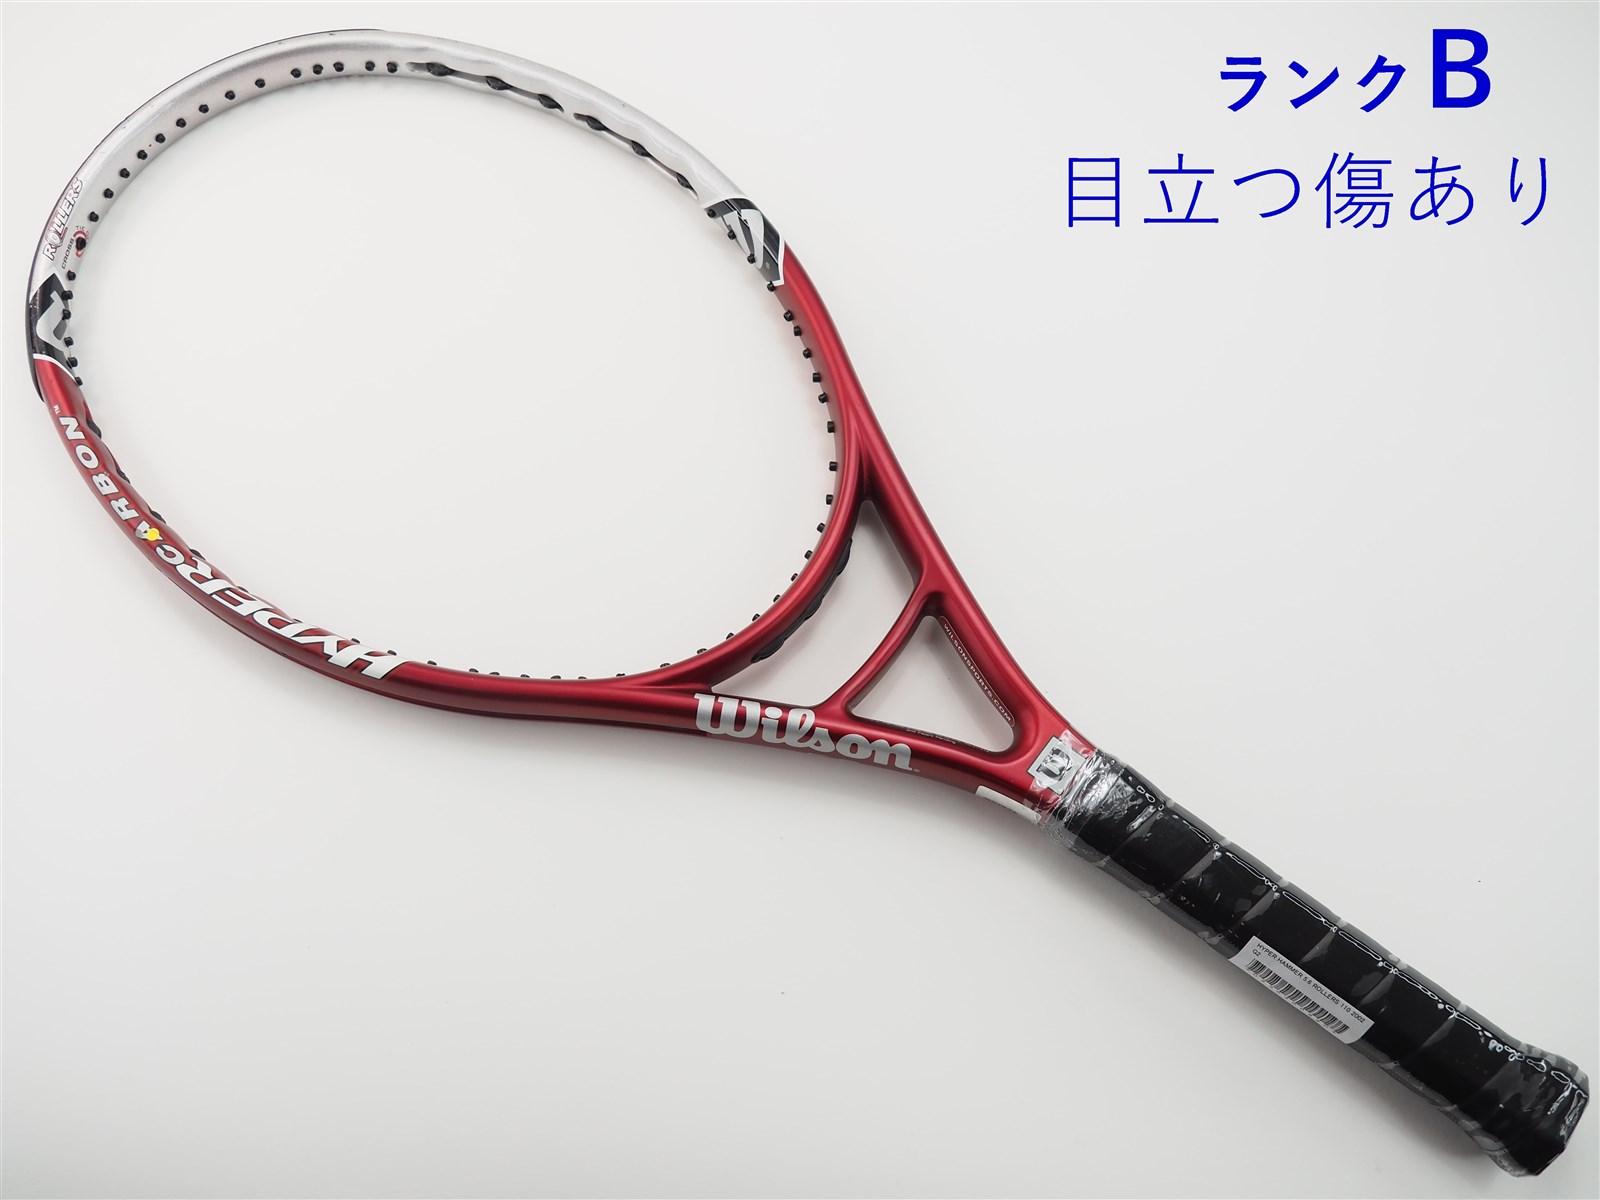 テニスラケット ウィルソン ハイパー ハンマー 2.5 120 (G2)WILSON